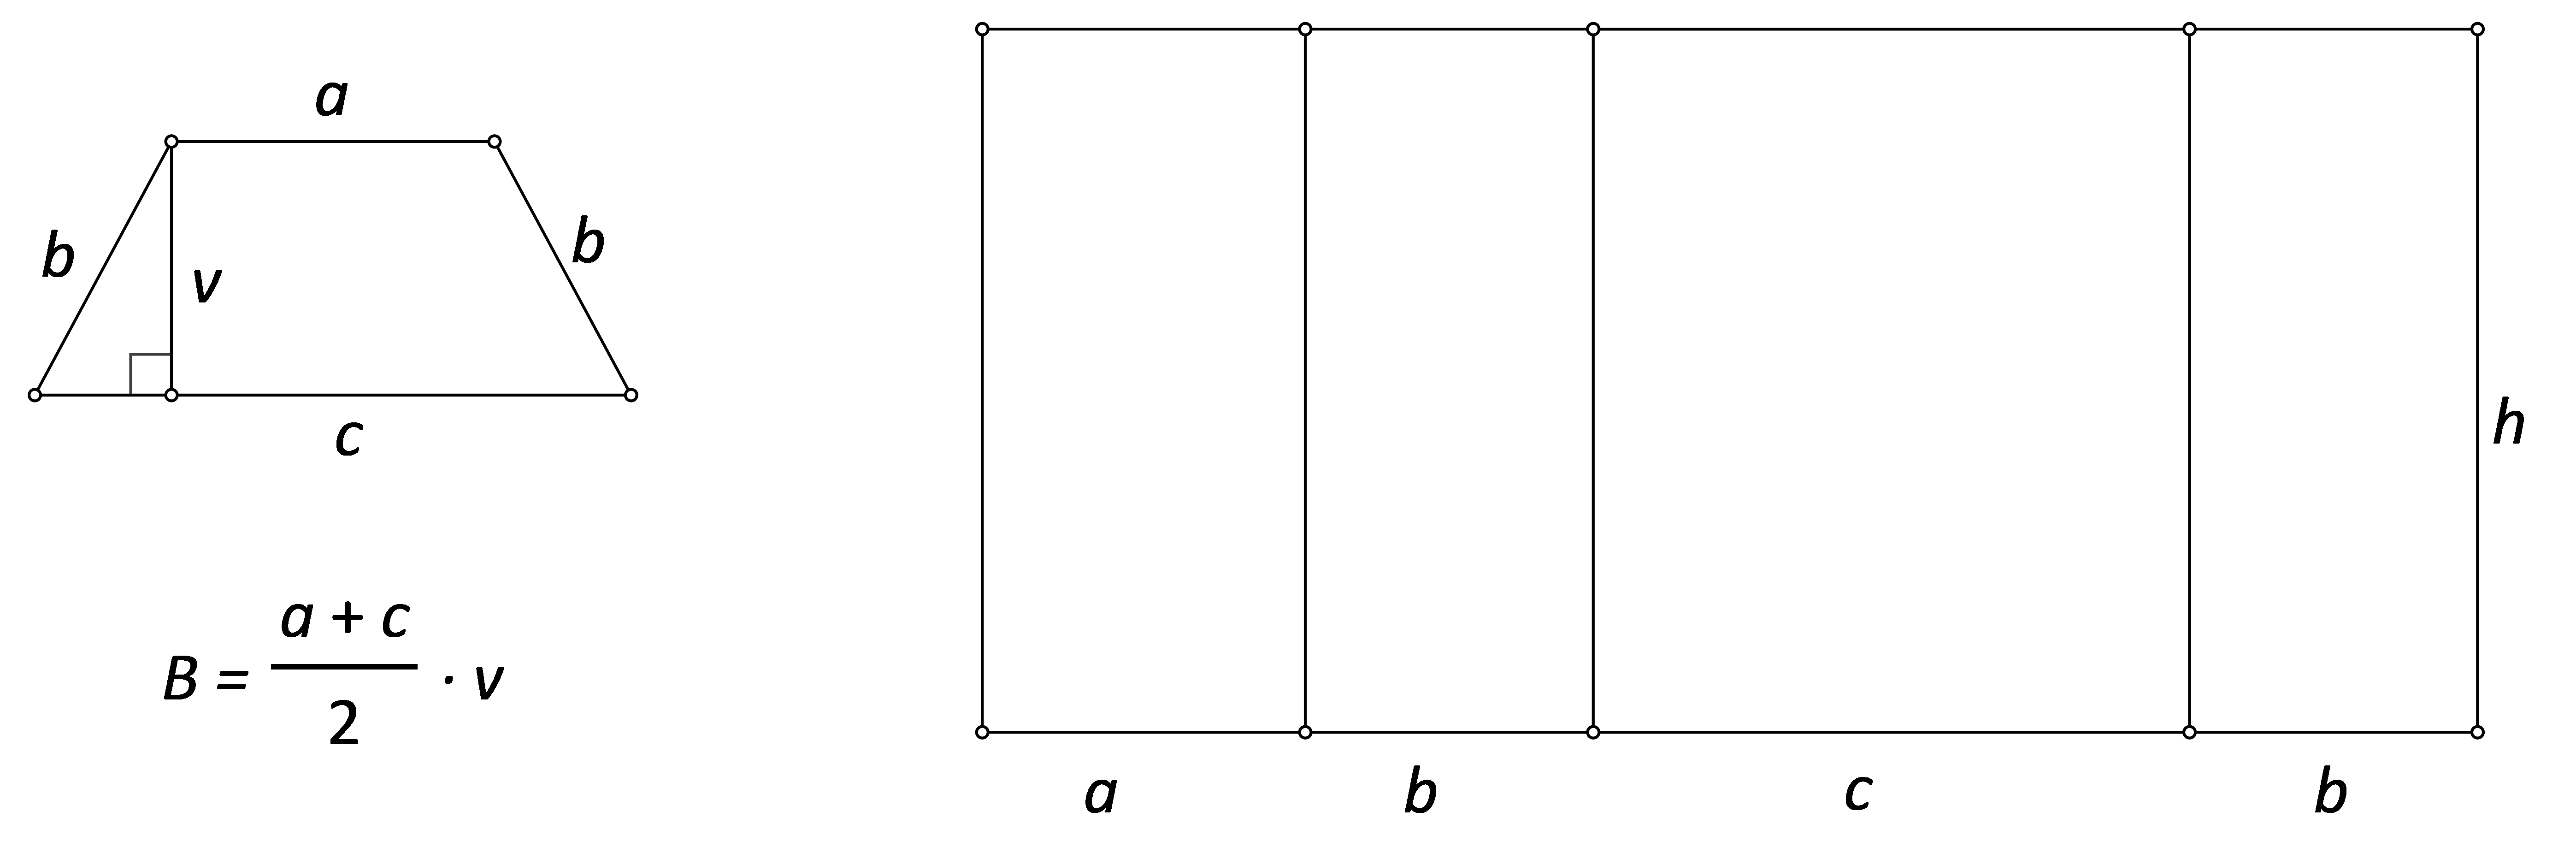 Slika prikazuje dijelove mreže prizme kojoj je baza jednakokračni trapez.